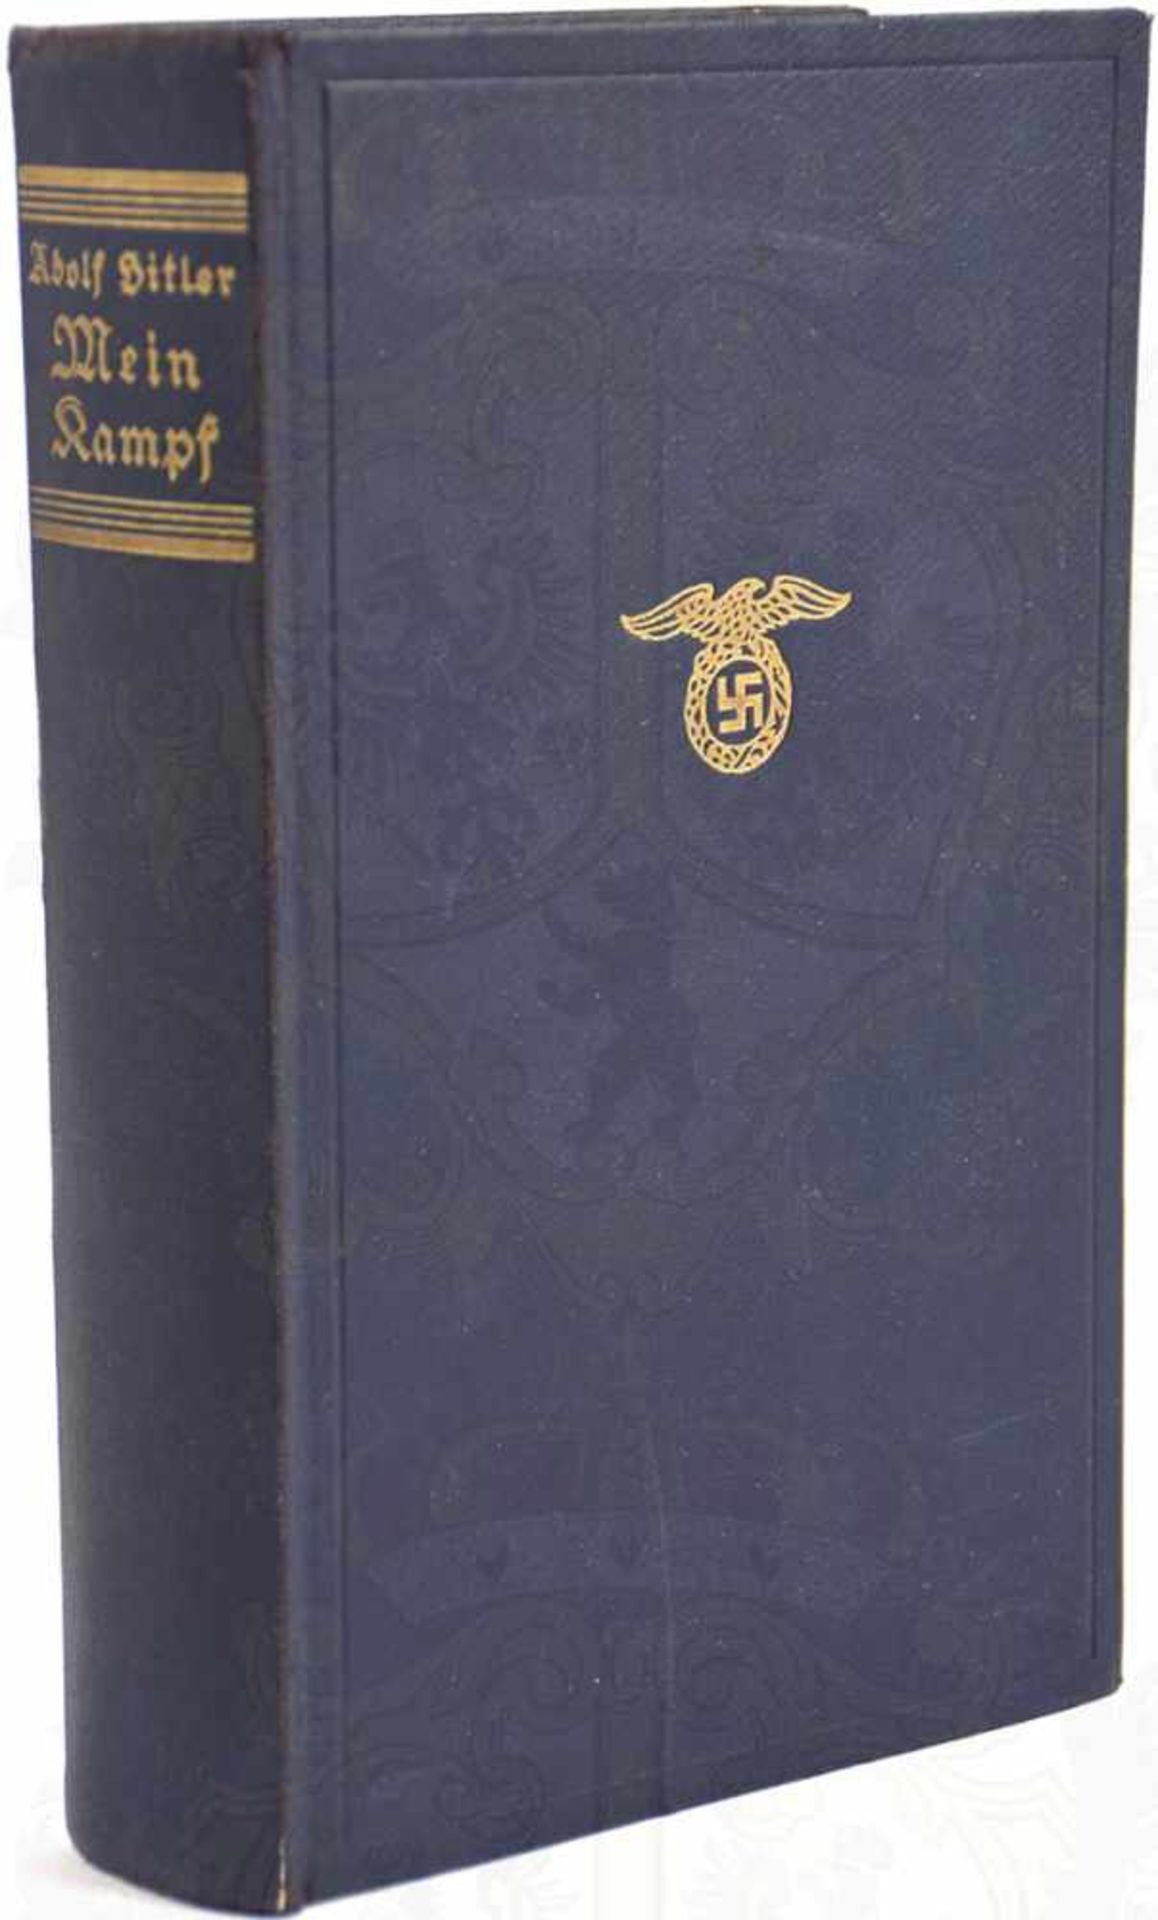 MEIN KAMPF, Adolf Hitler, Volksausgabe, Eher Verlag, 1938, 781 S., Porträtbild, blaues goldgepr.